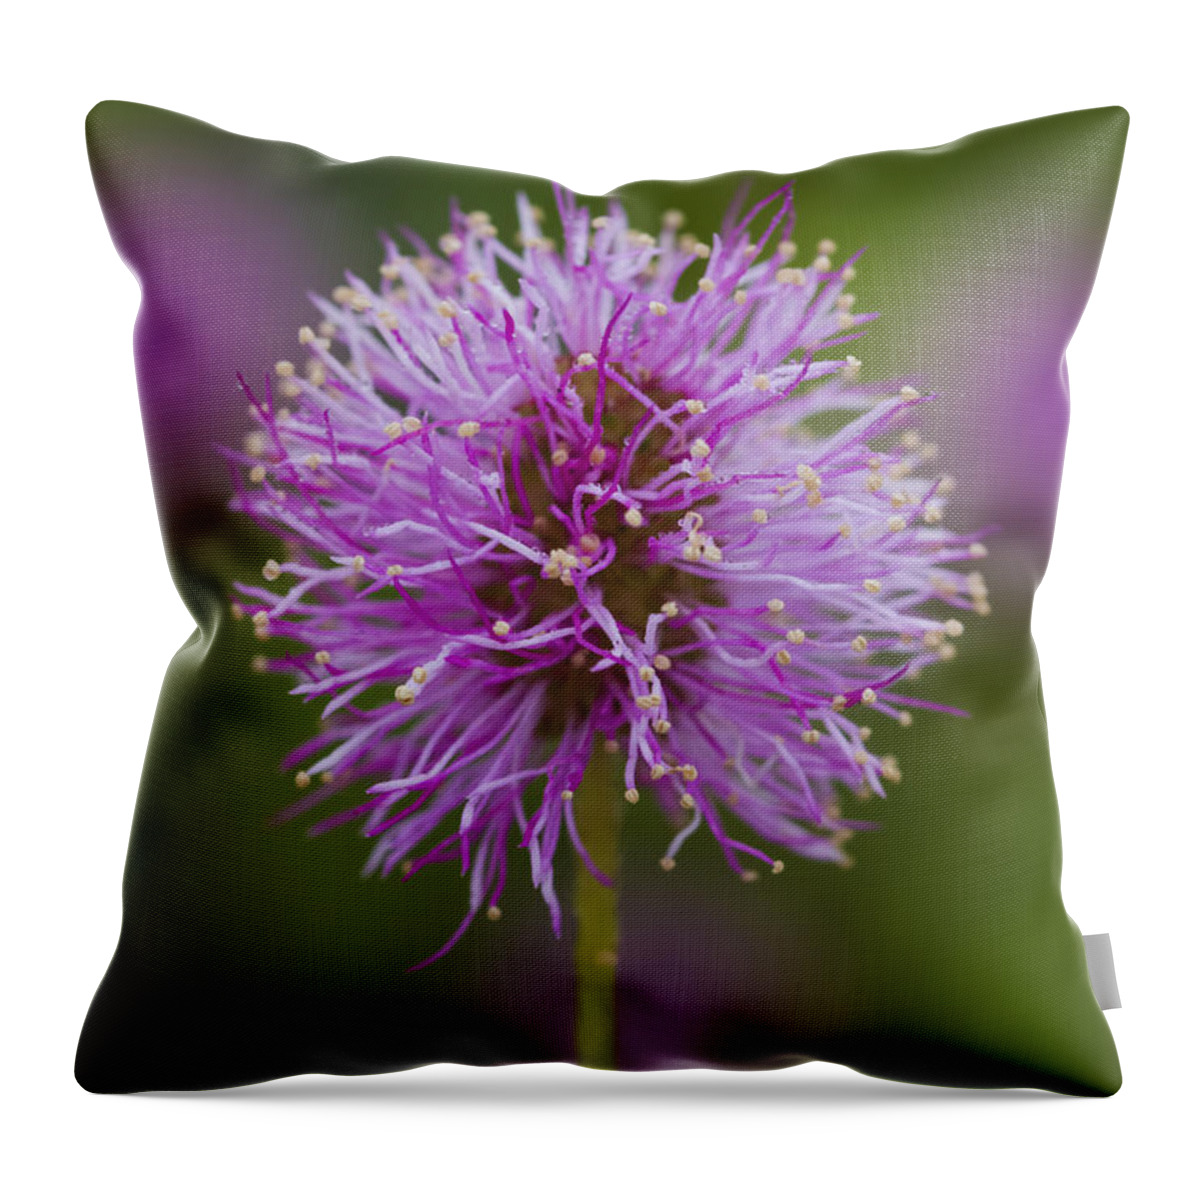 Flower Throw Pillow featuring the photograph Sensitive Briar Flower Globe by Steven Schwartzman